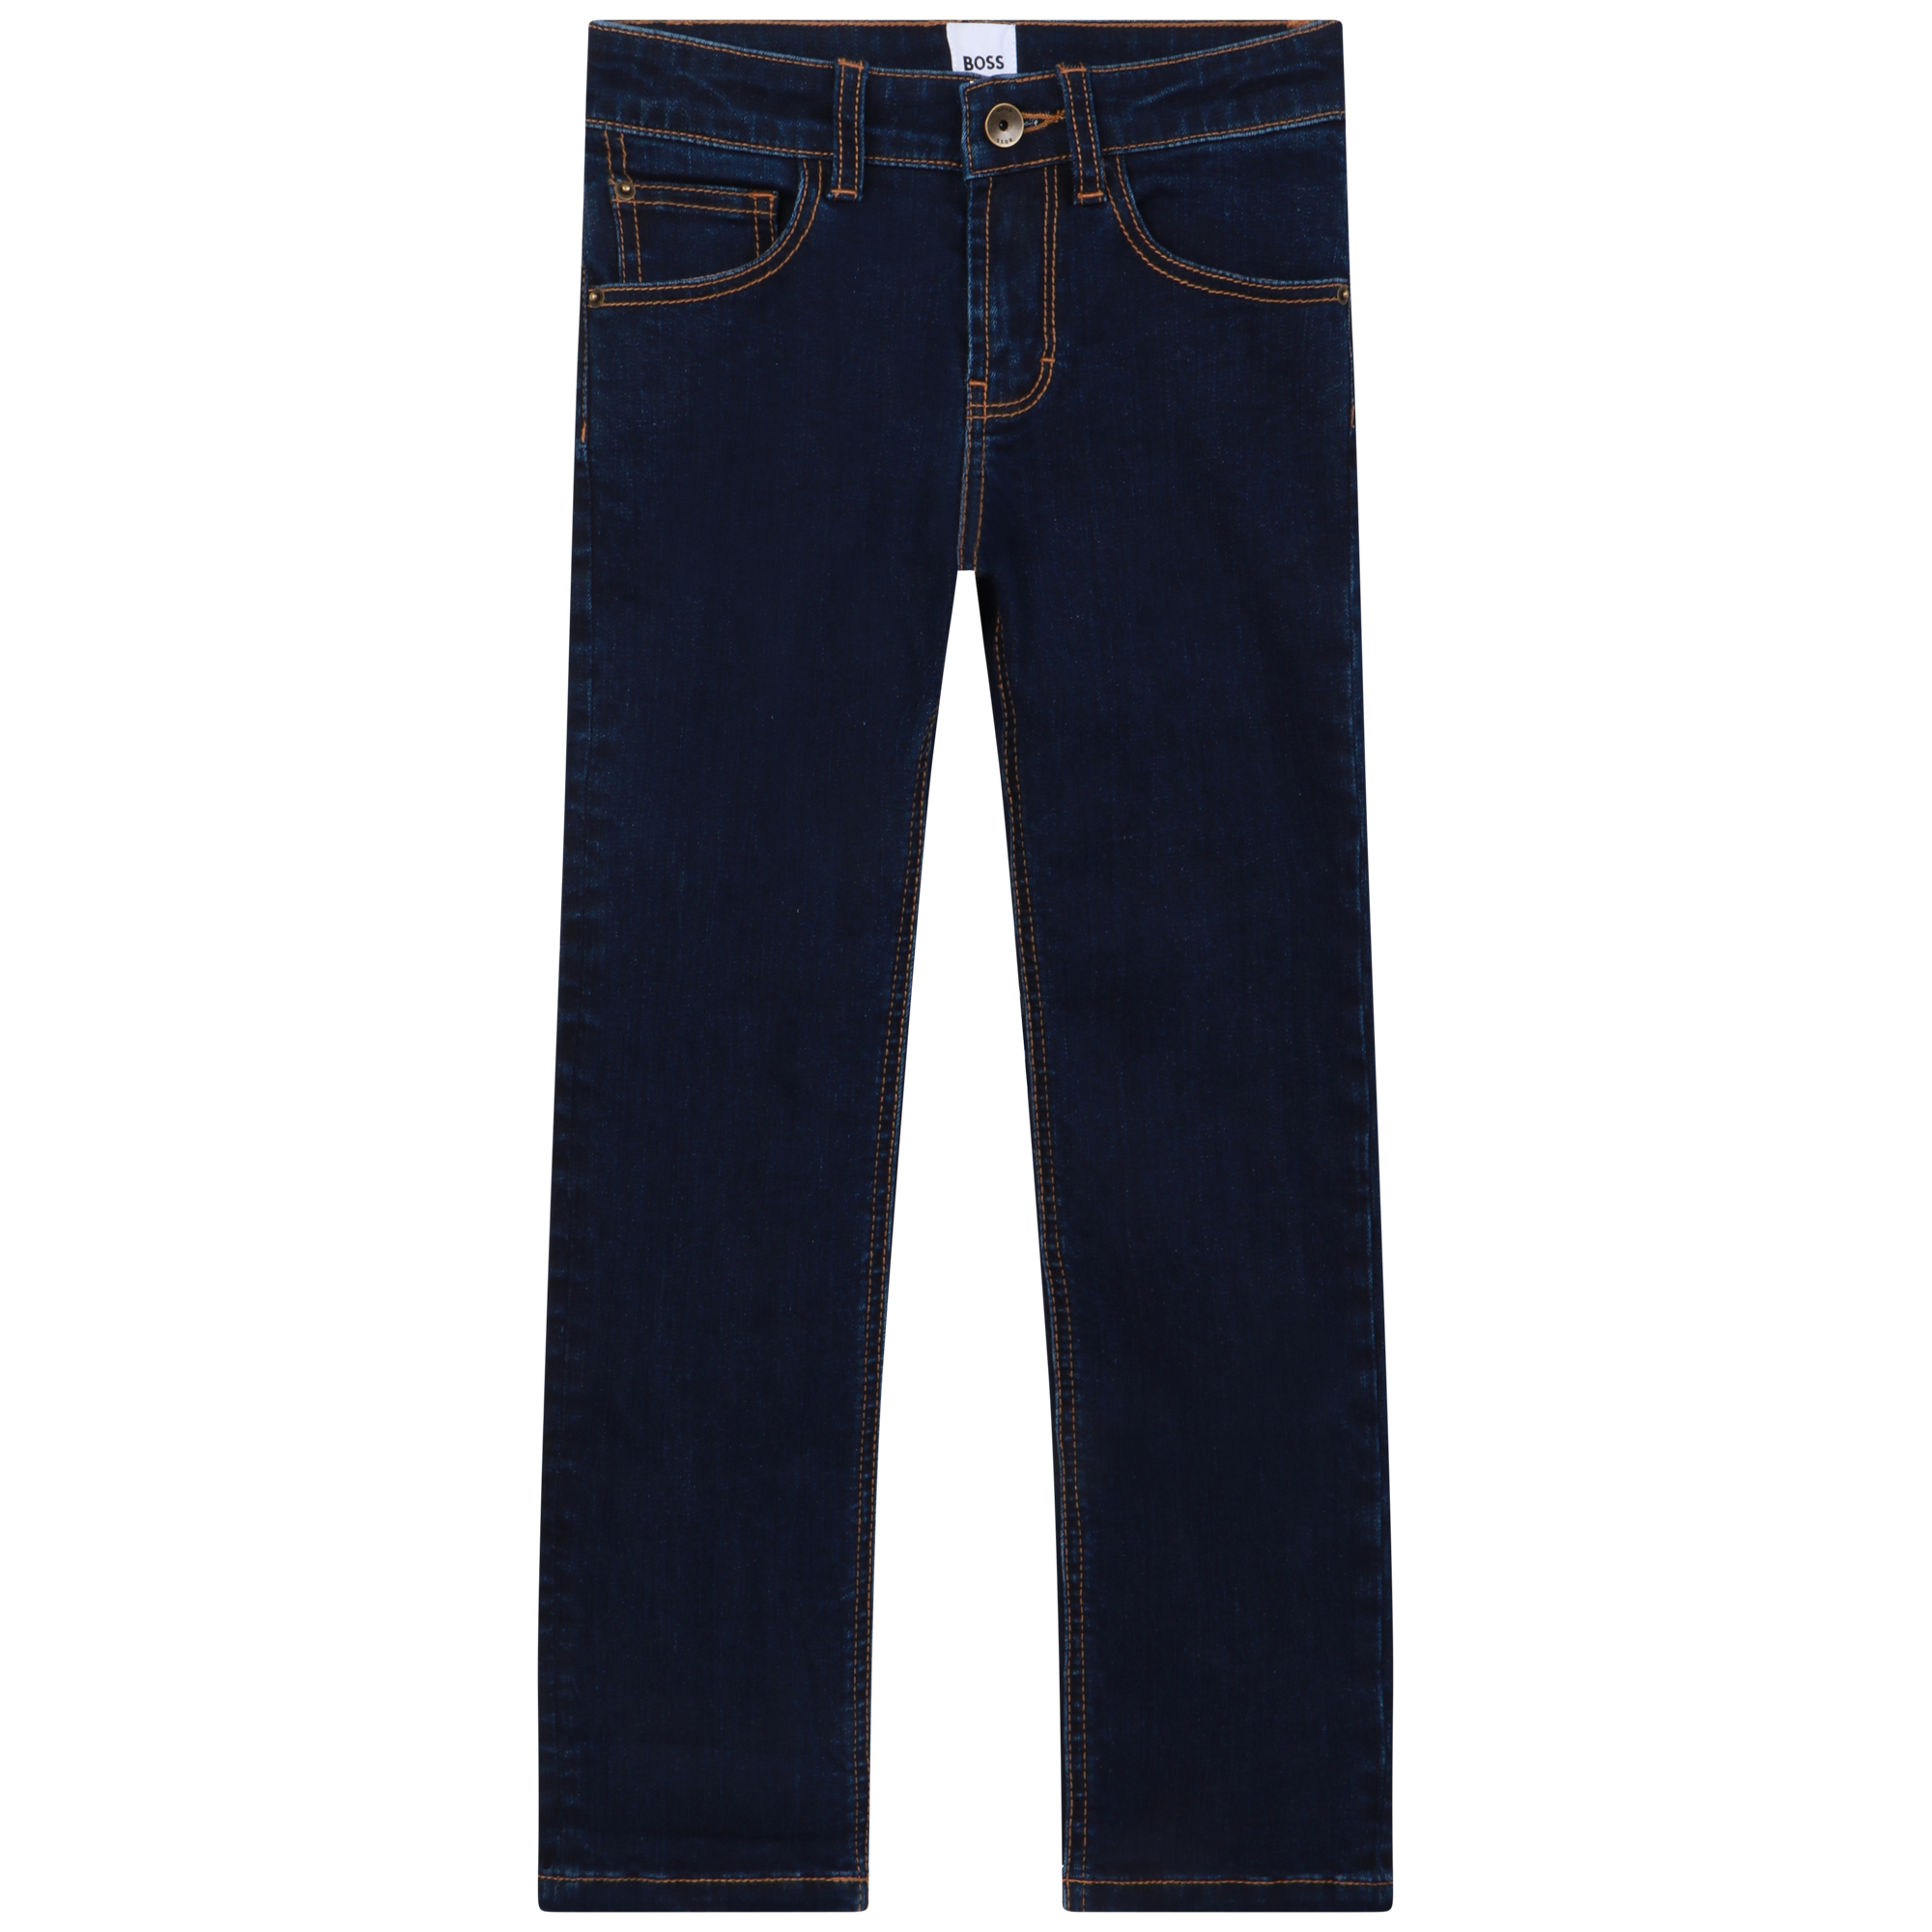 Rechte jeans met logo BOSS Voor